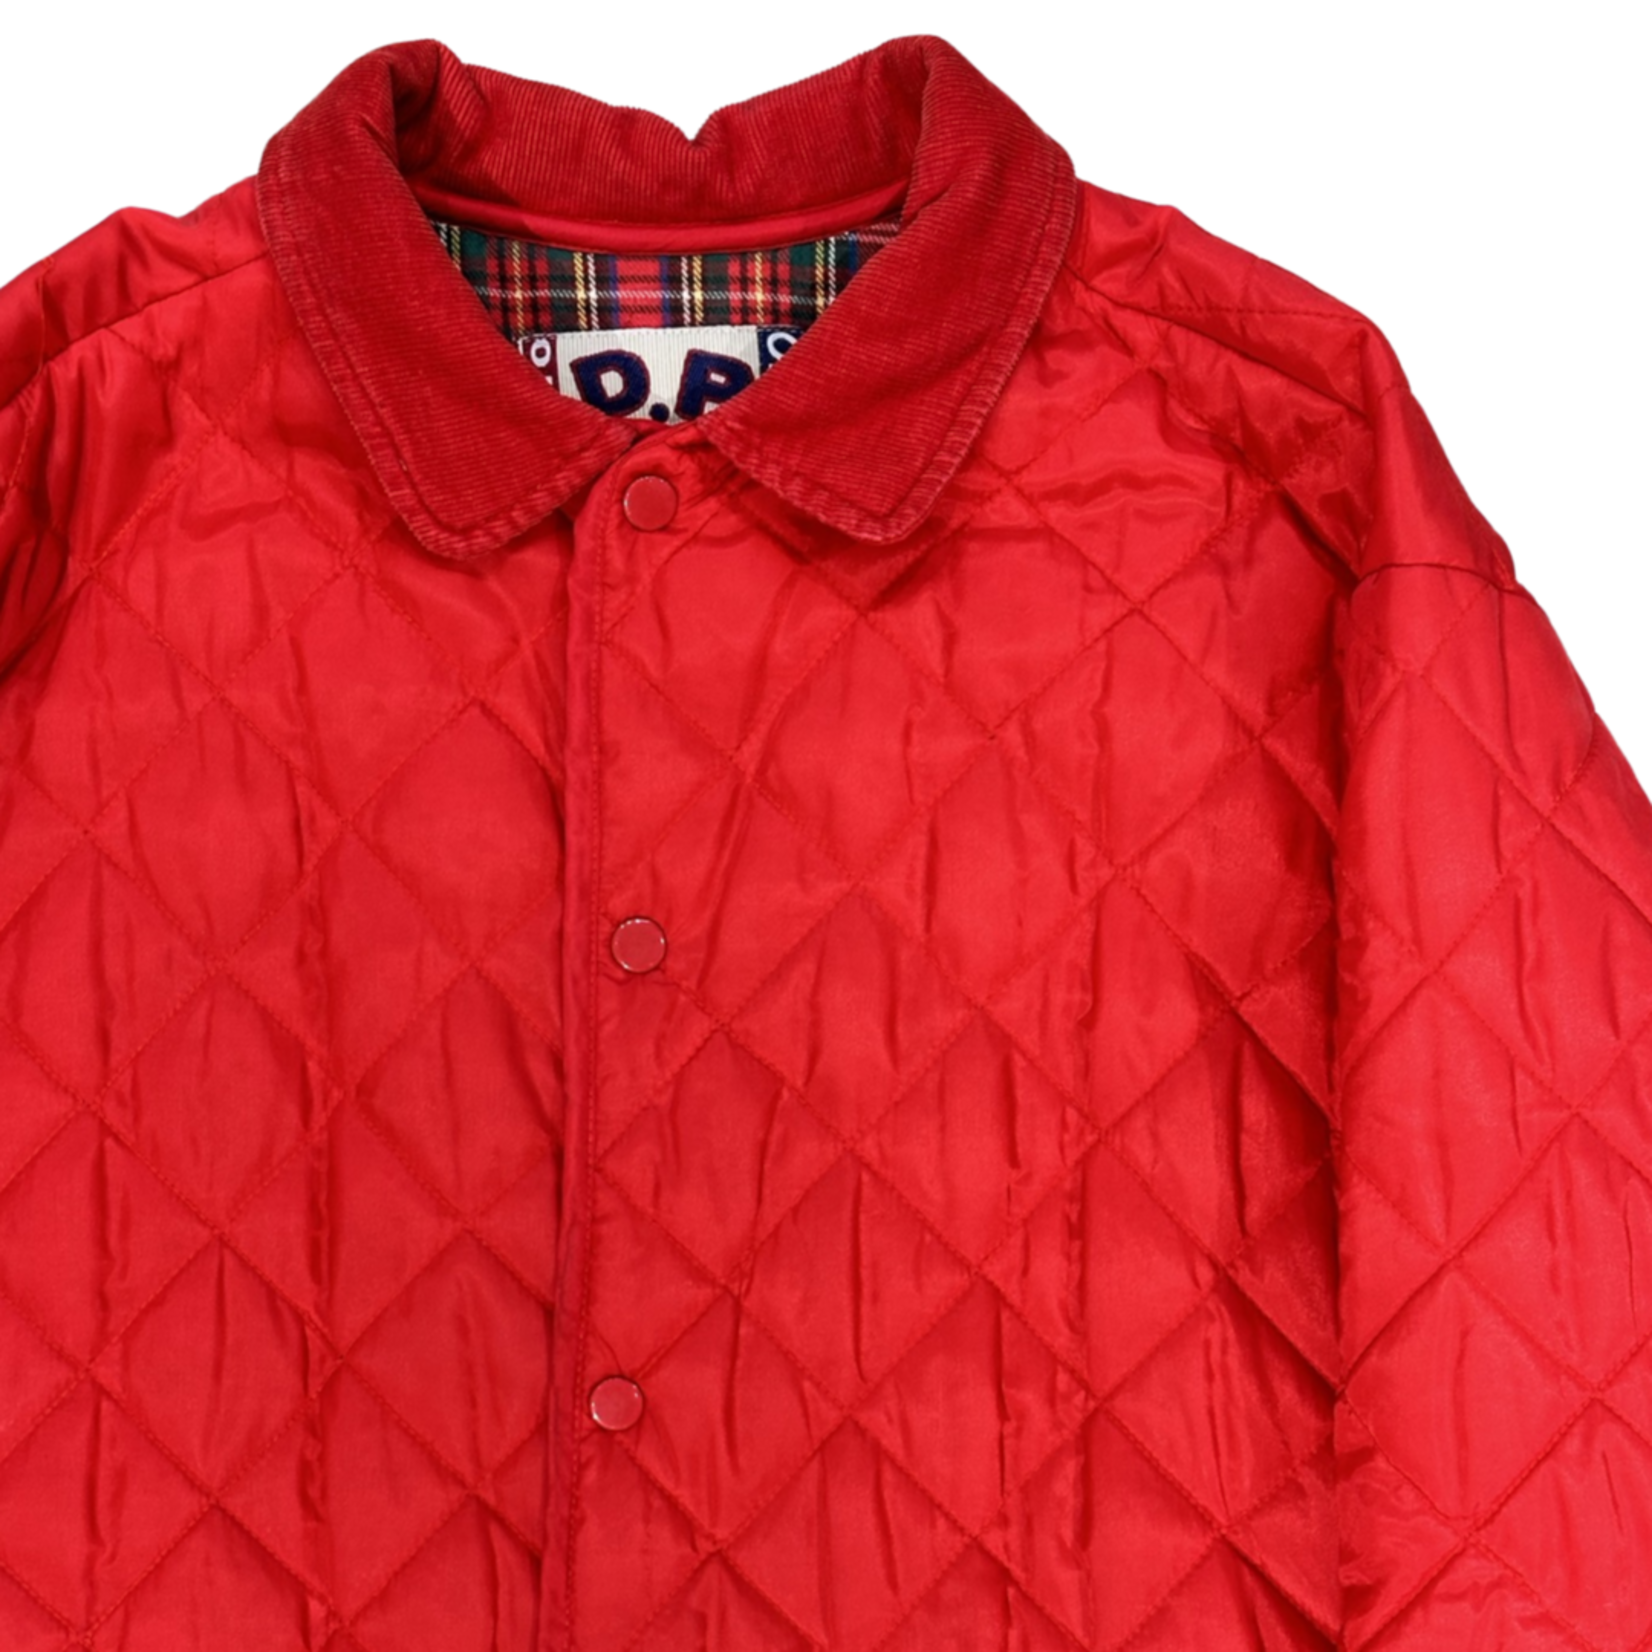 Vintage Vintage gewatteerde jas rood size XXL D.P wear